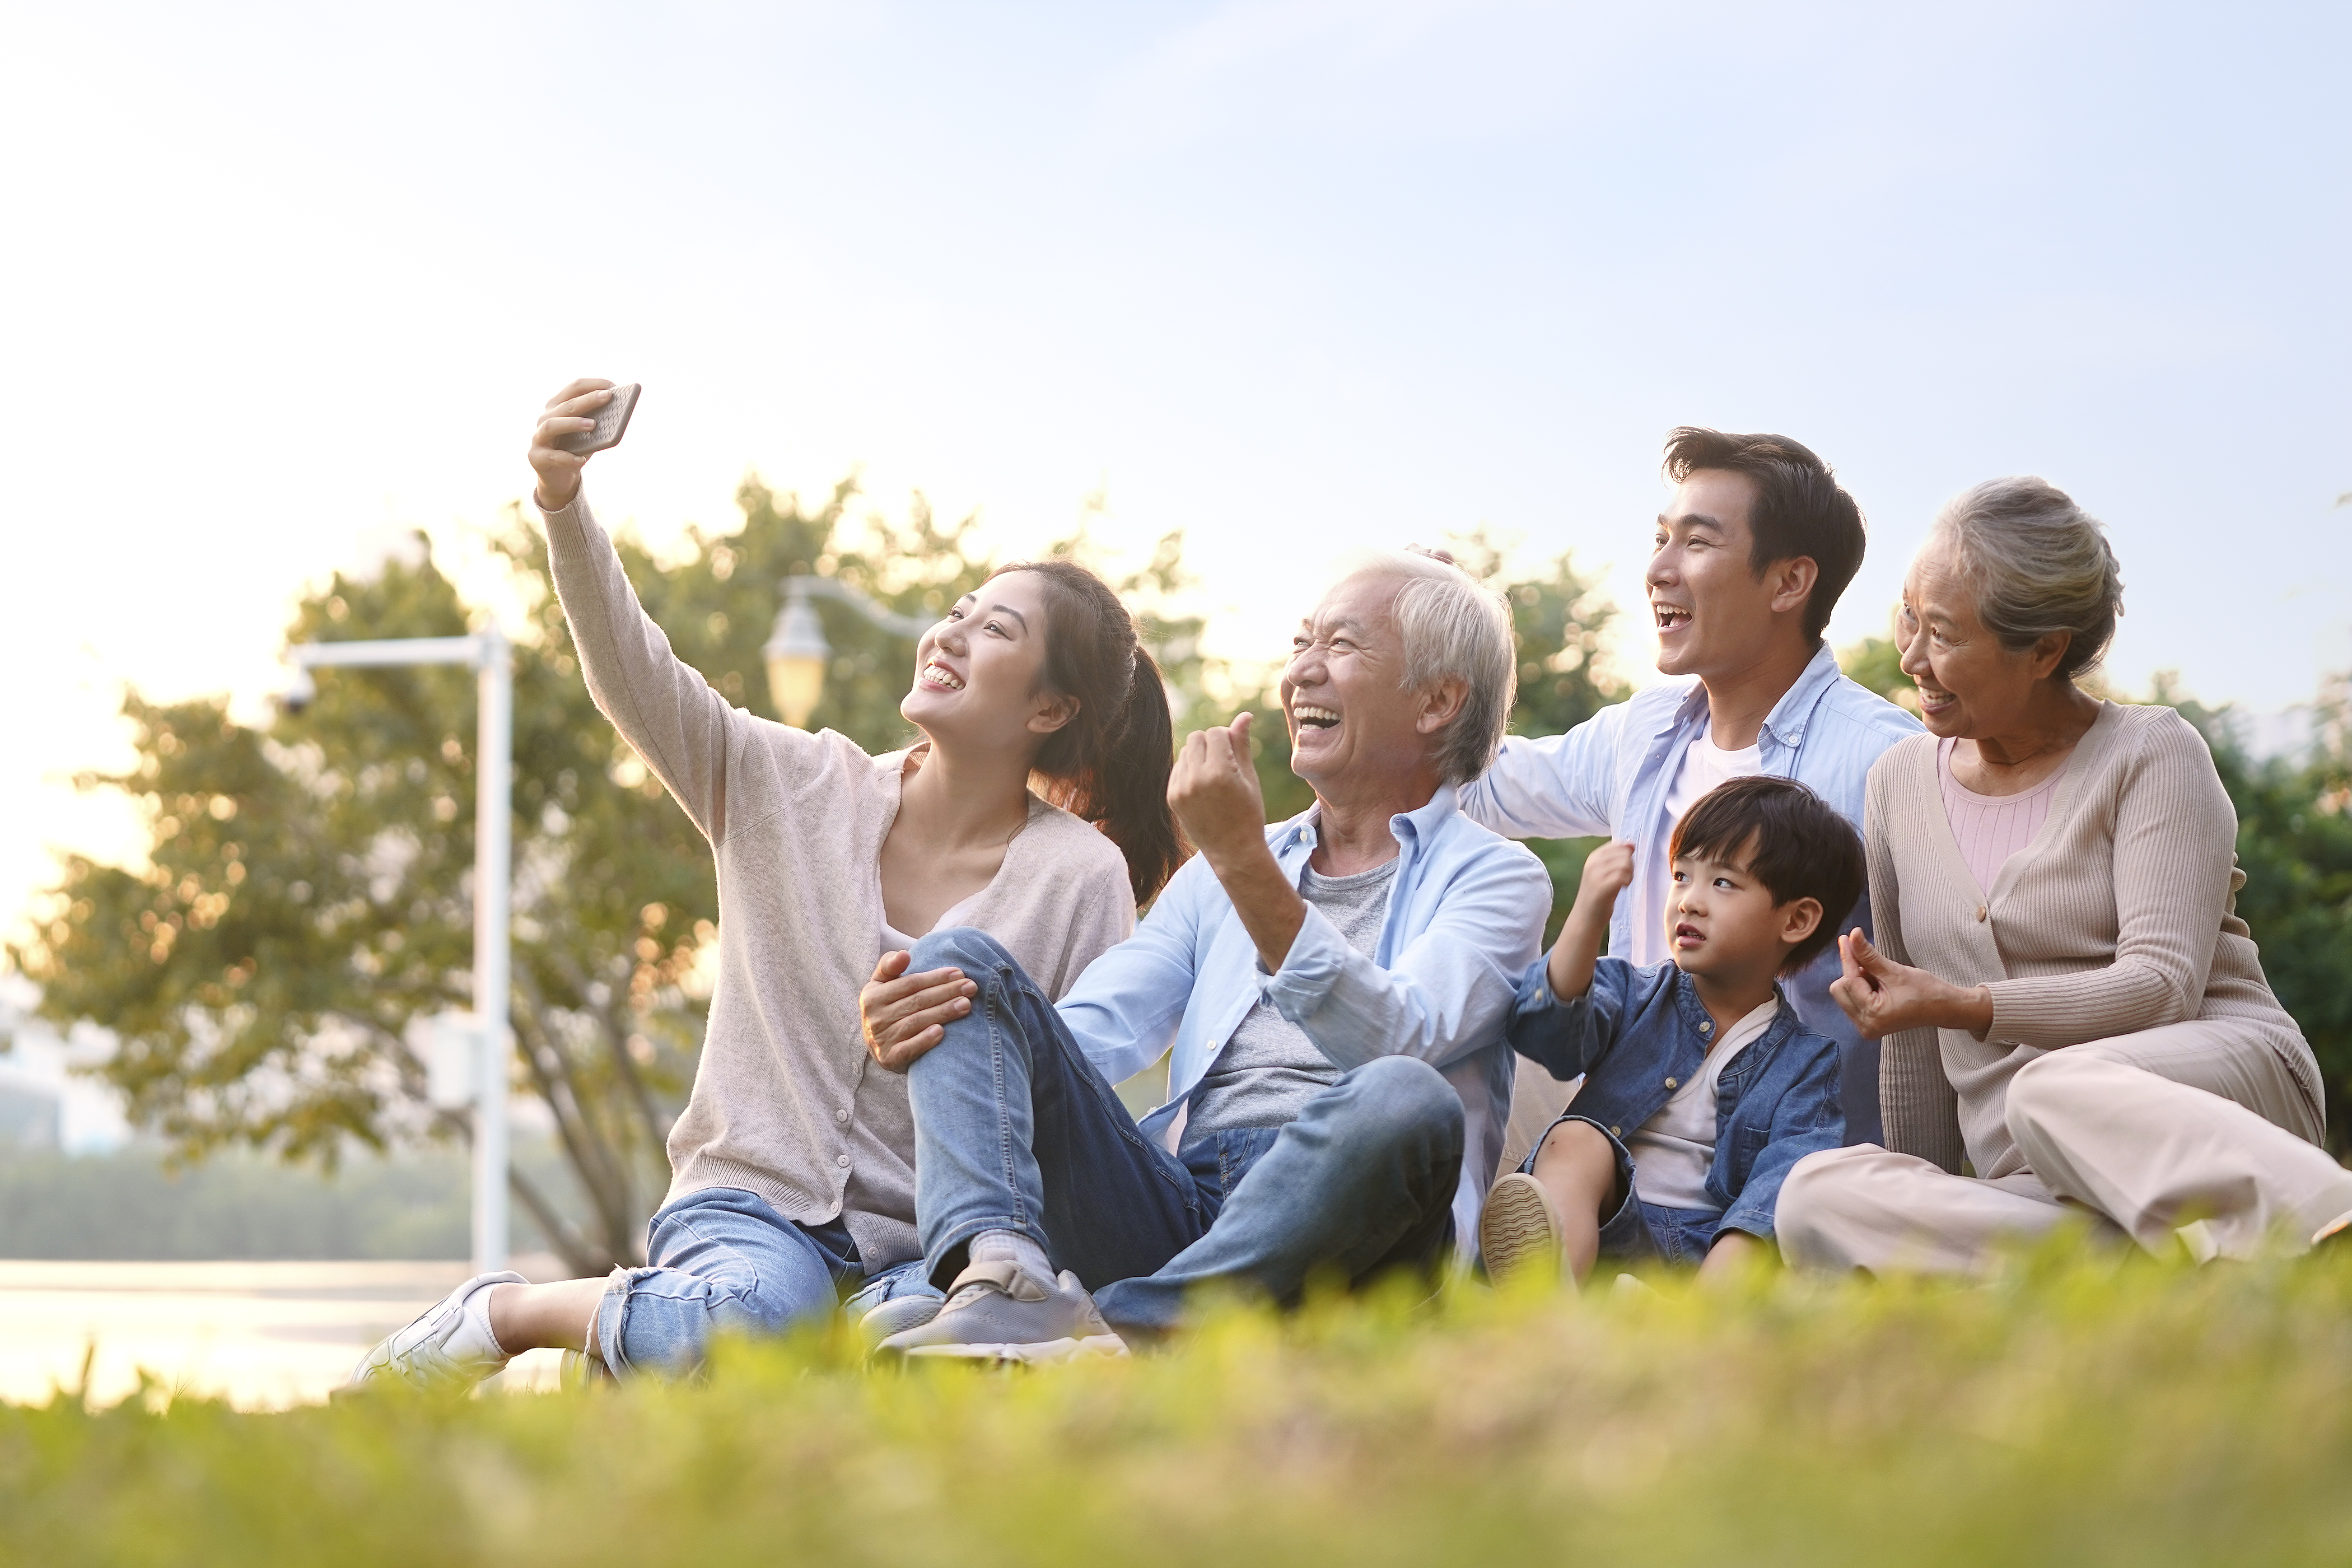 Glücklichere ältere Menschen durch ein aktives und soziales Leben